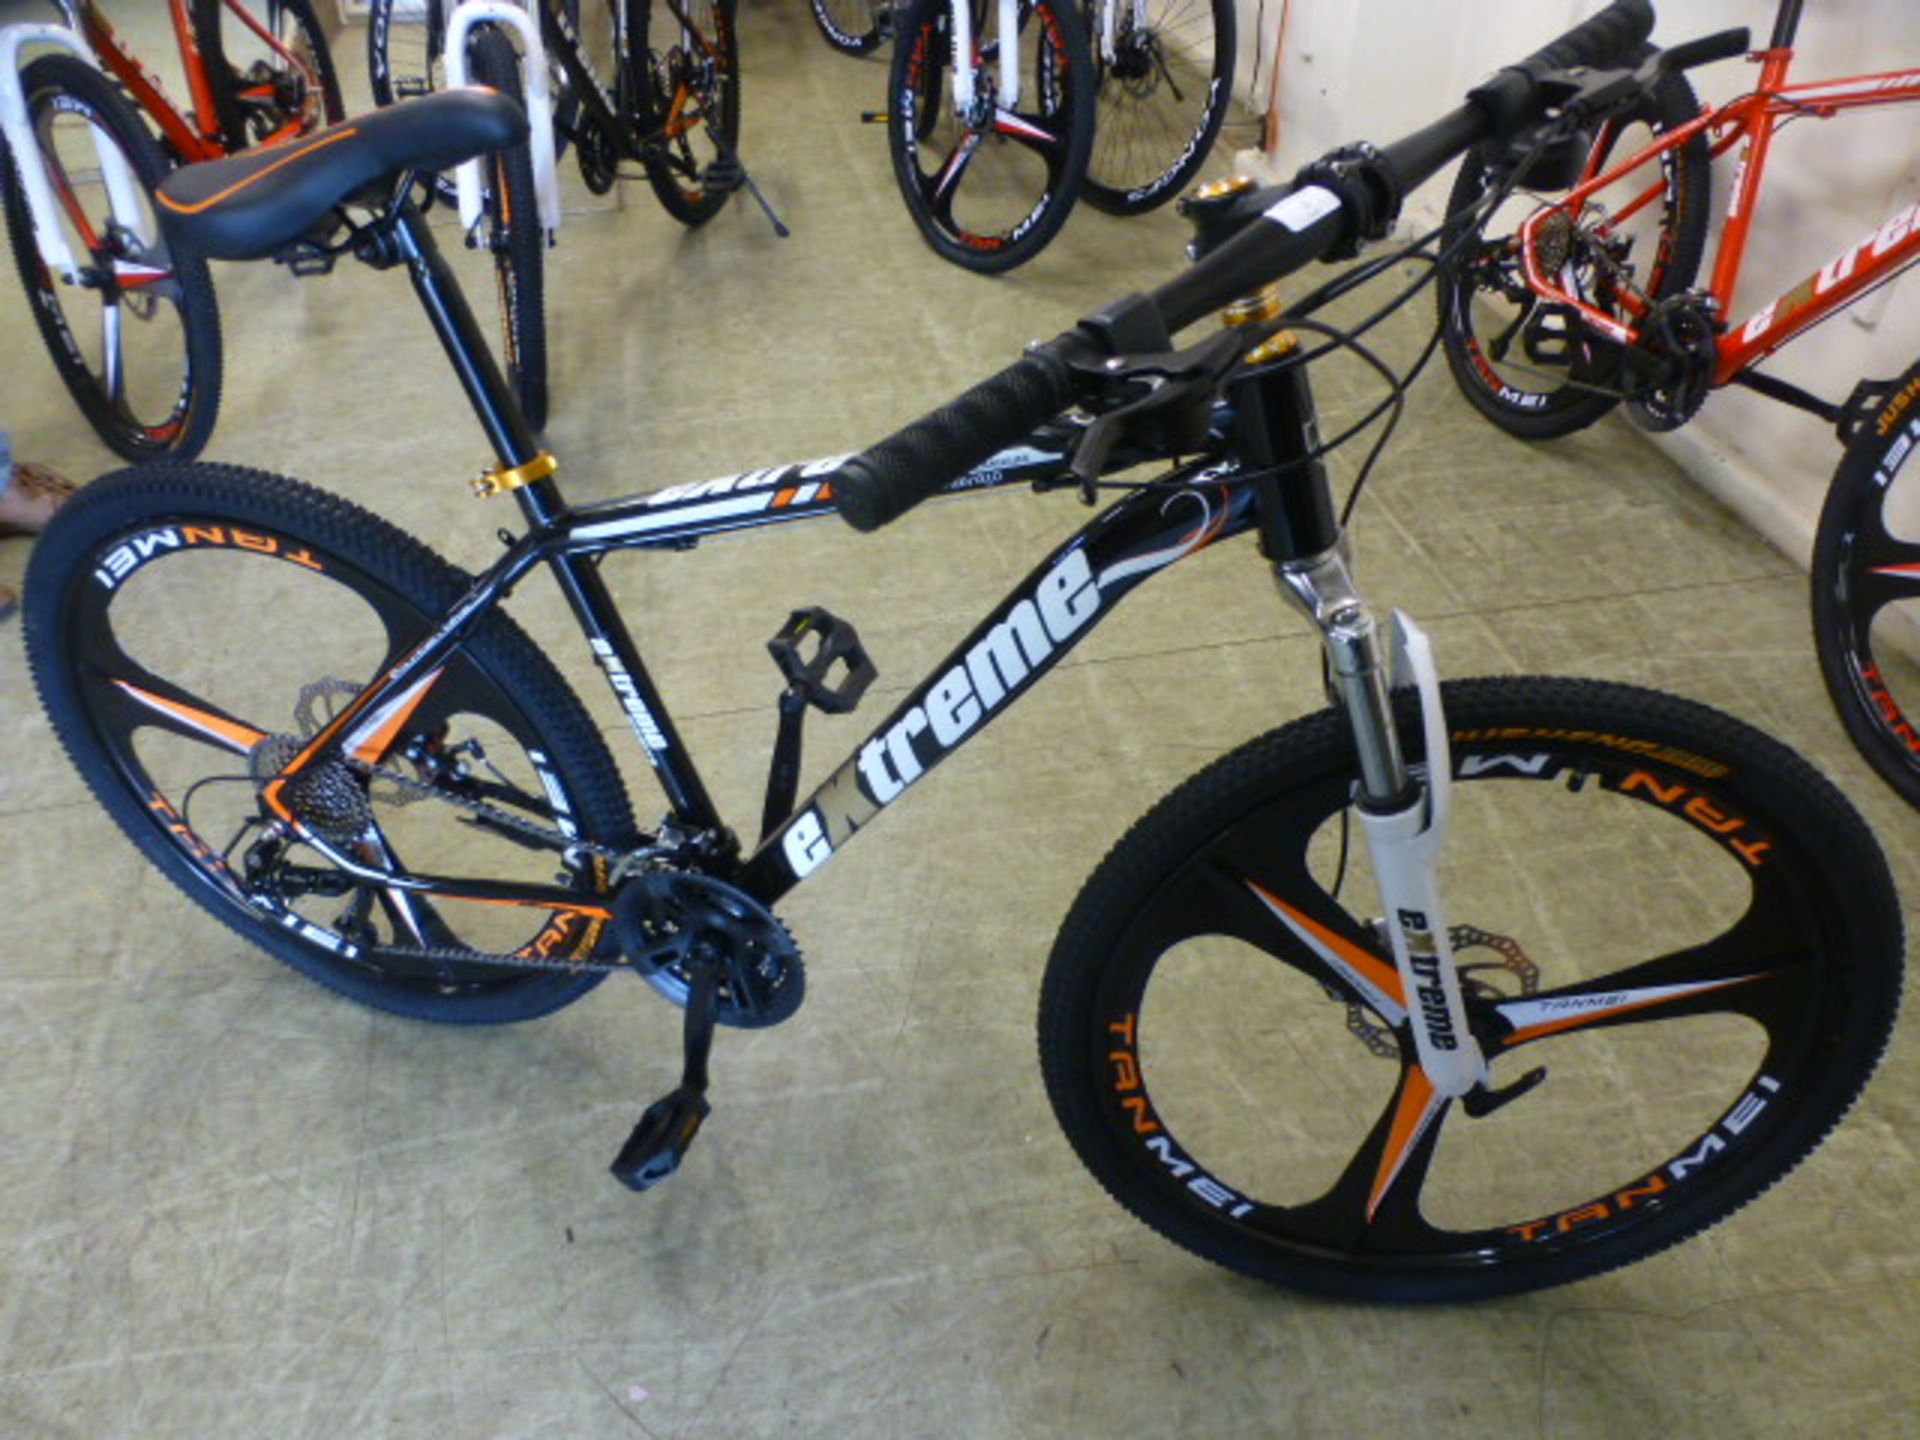 An Extreme black/orange 27 speed mountain bike with 26'' wheels